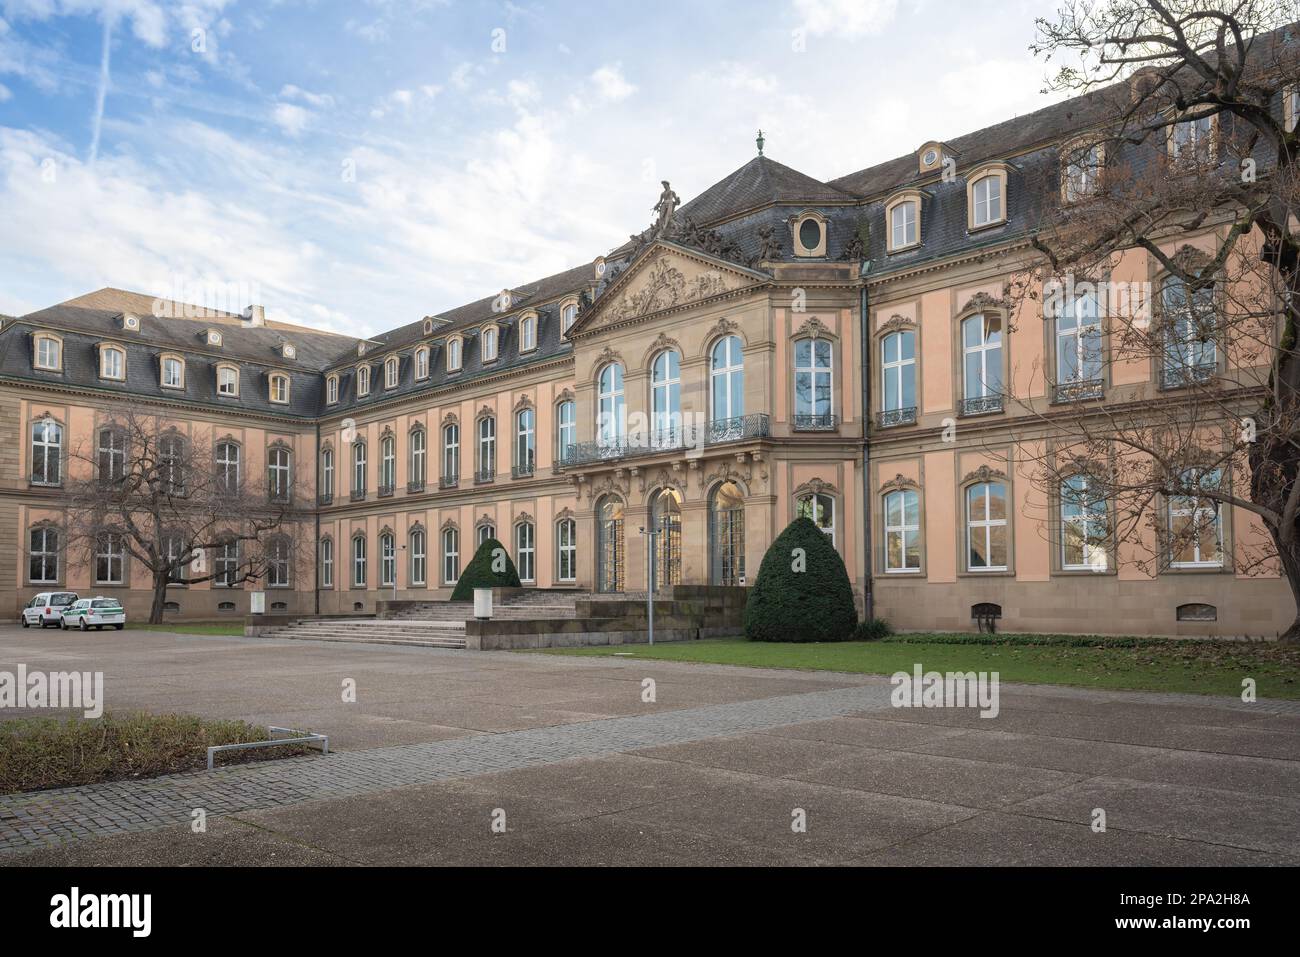 Facciata Neues Schloss (Palazzo nuovo) - Stoccarda, Germania Foto Stock